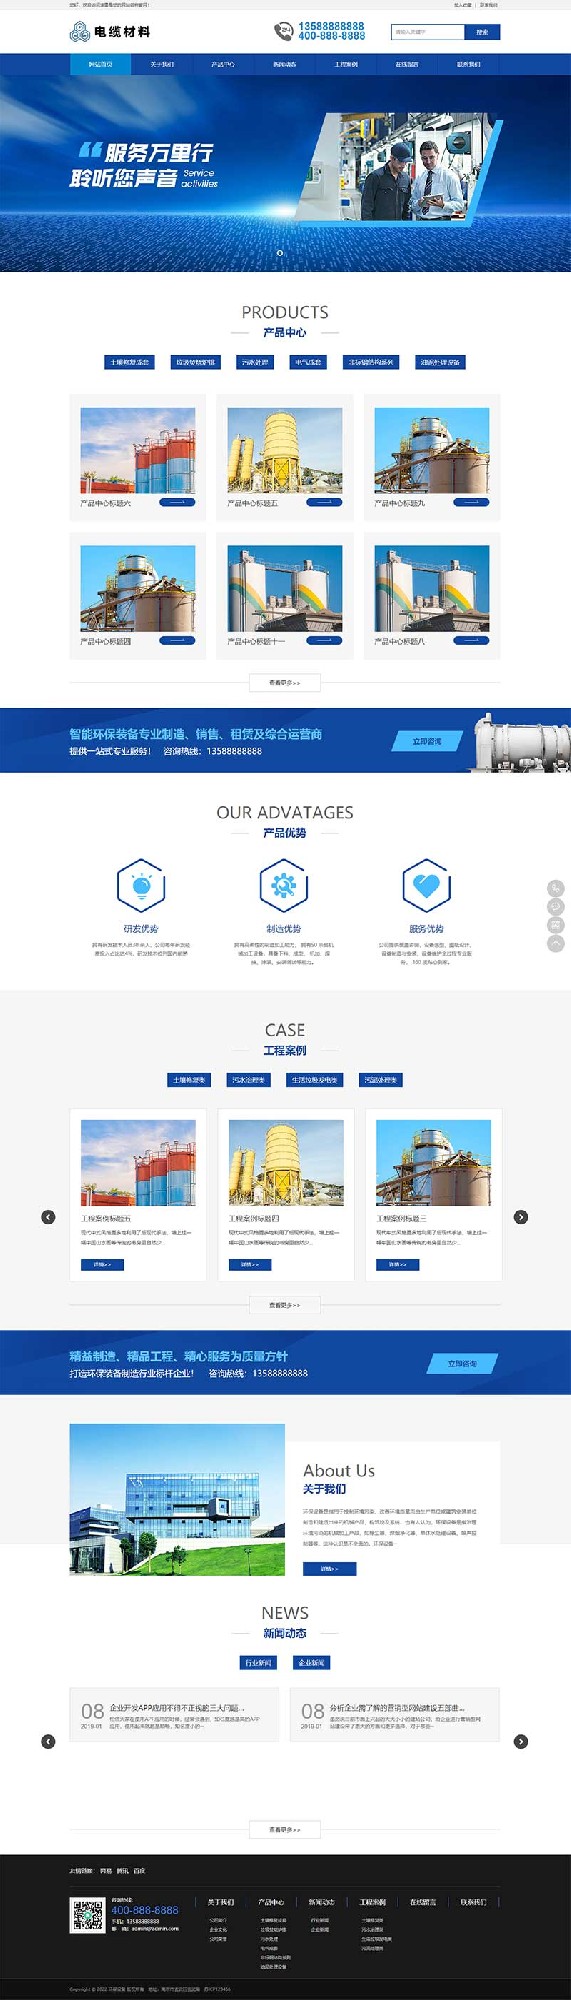 (PC+WAP)智能环保设备网站 蓝色营销型机械网站